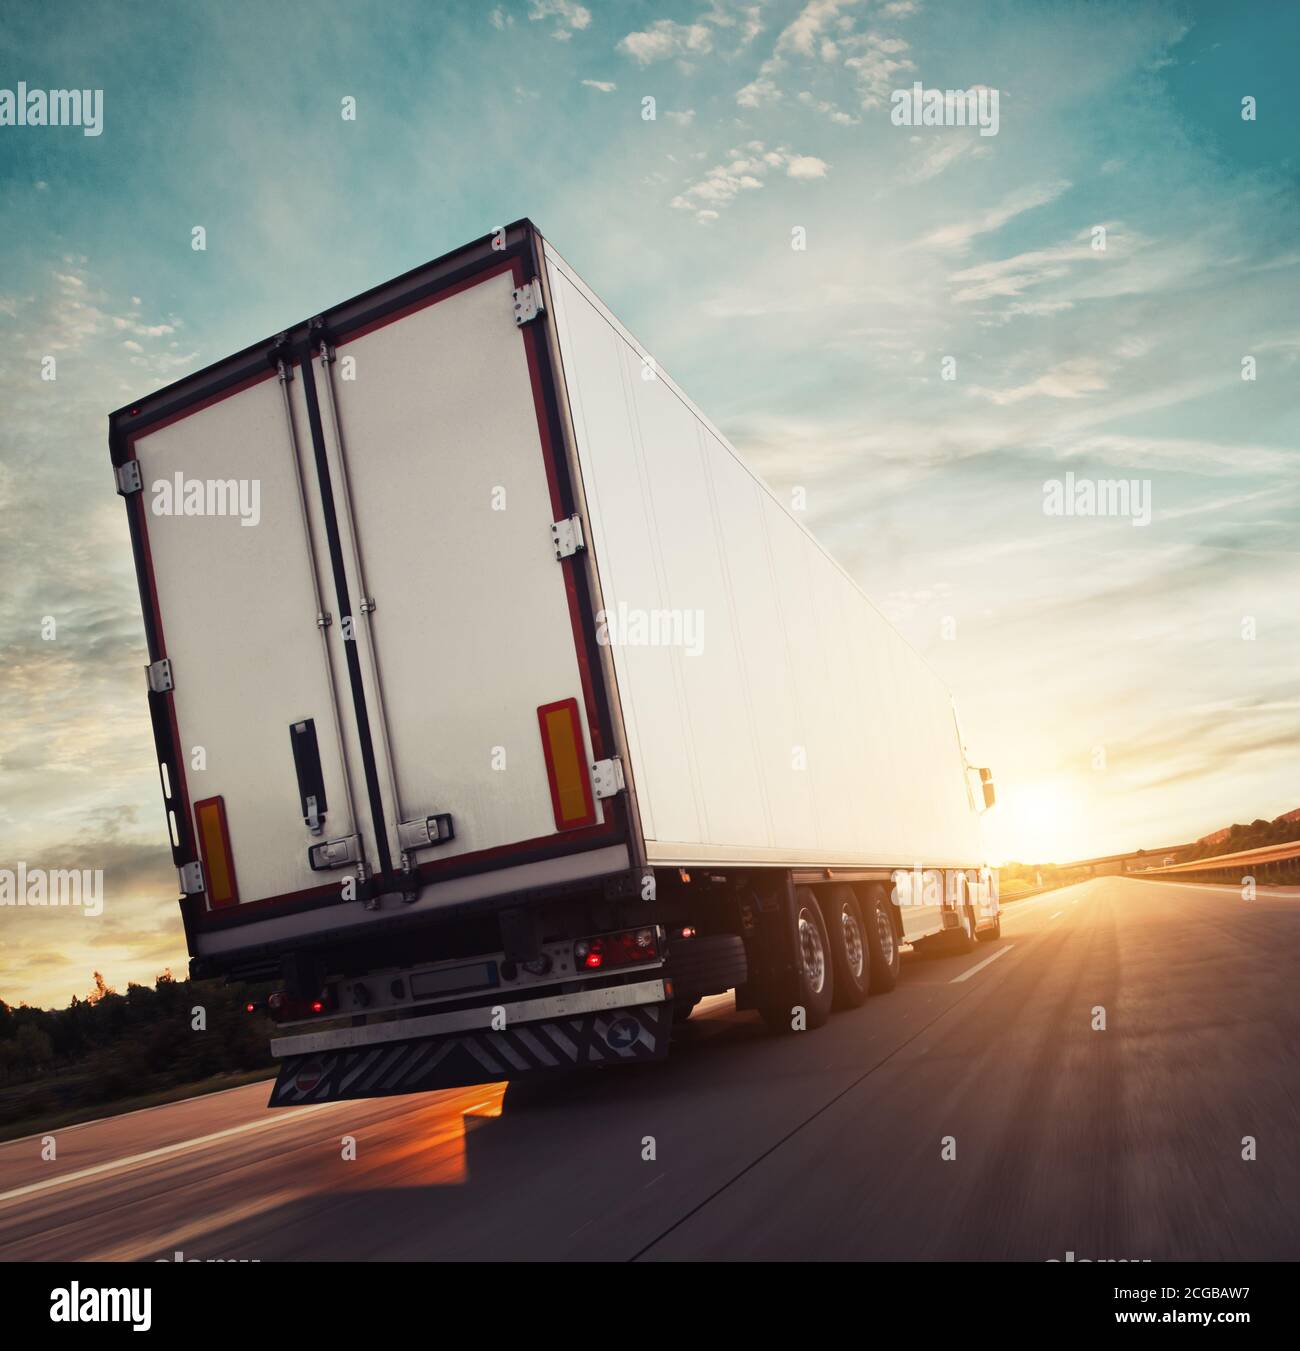 Vue arrière d'un camion européen sur autoroute avec lumière spectaculaire au coucher du soleil. Thème du transport de marchandises et de l'approvisionnement. Banque D'Images